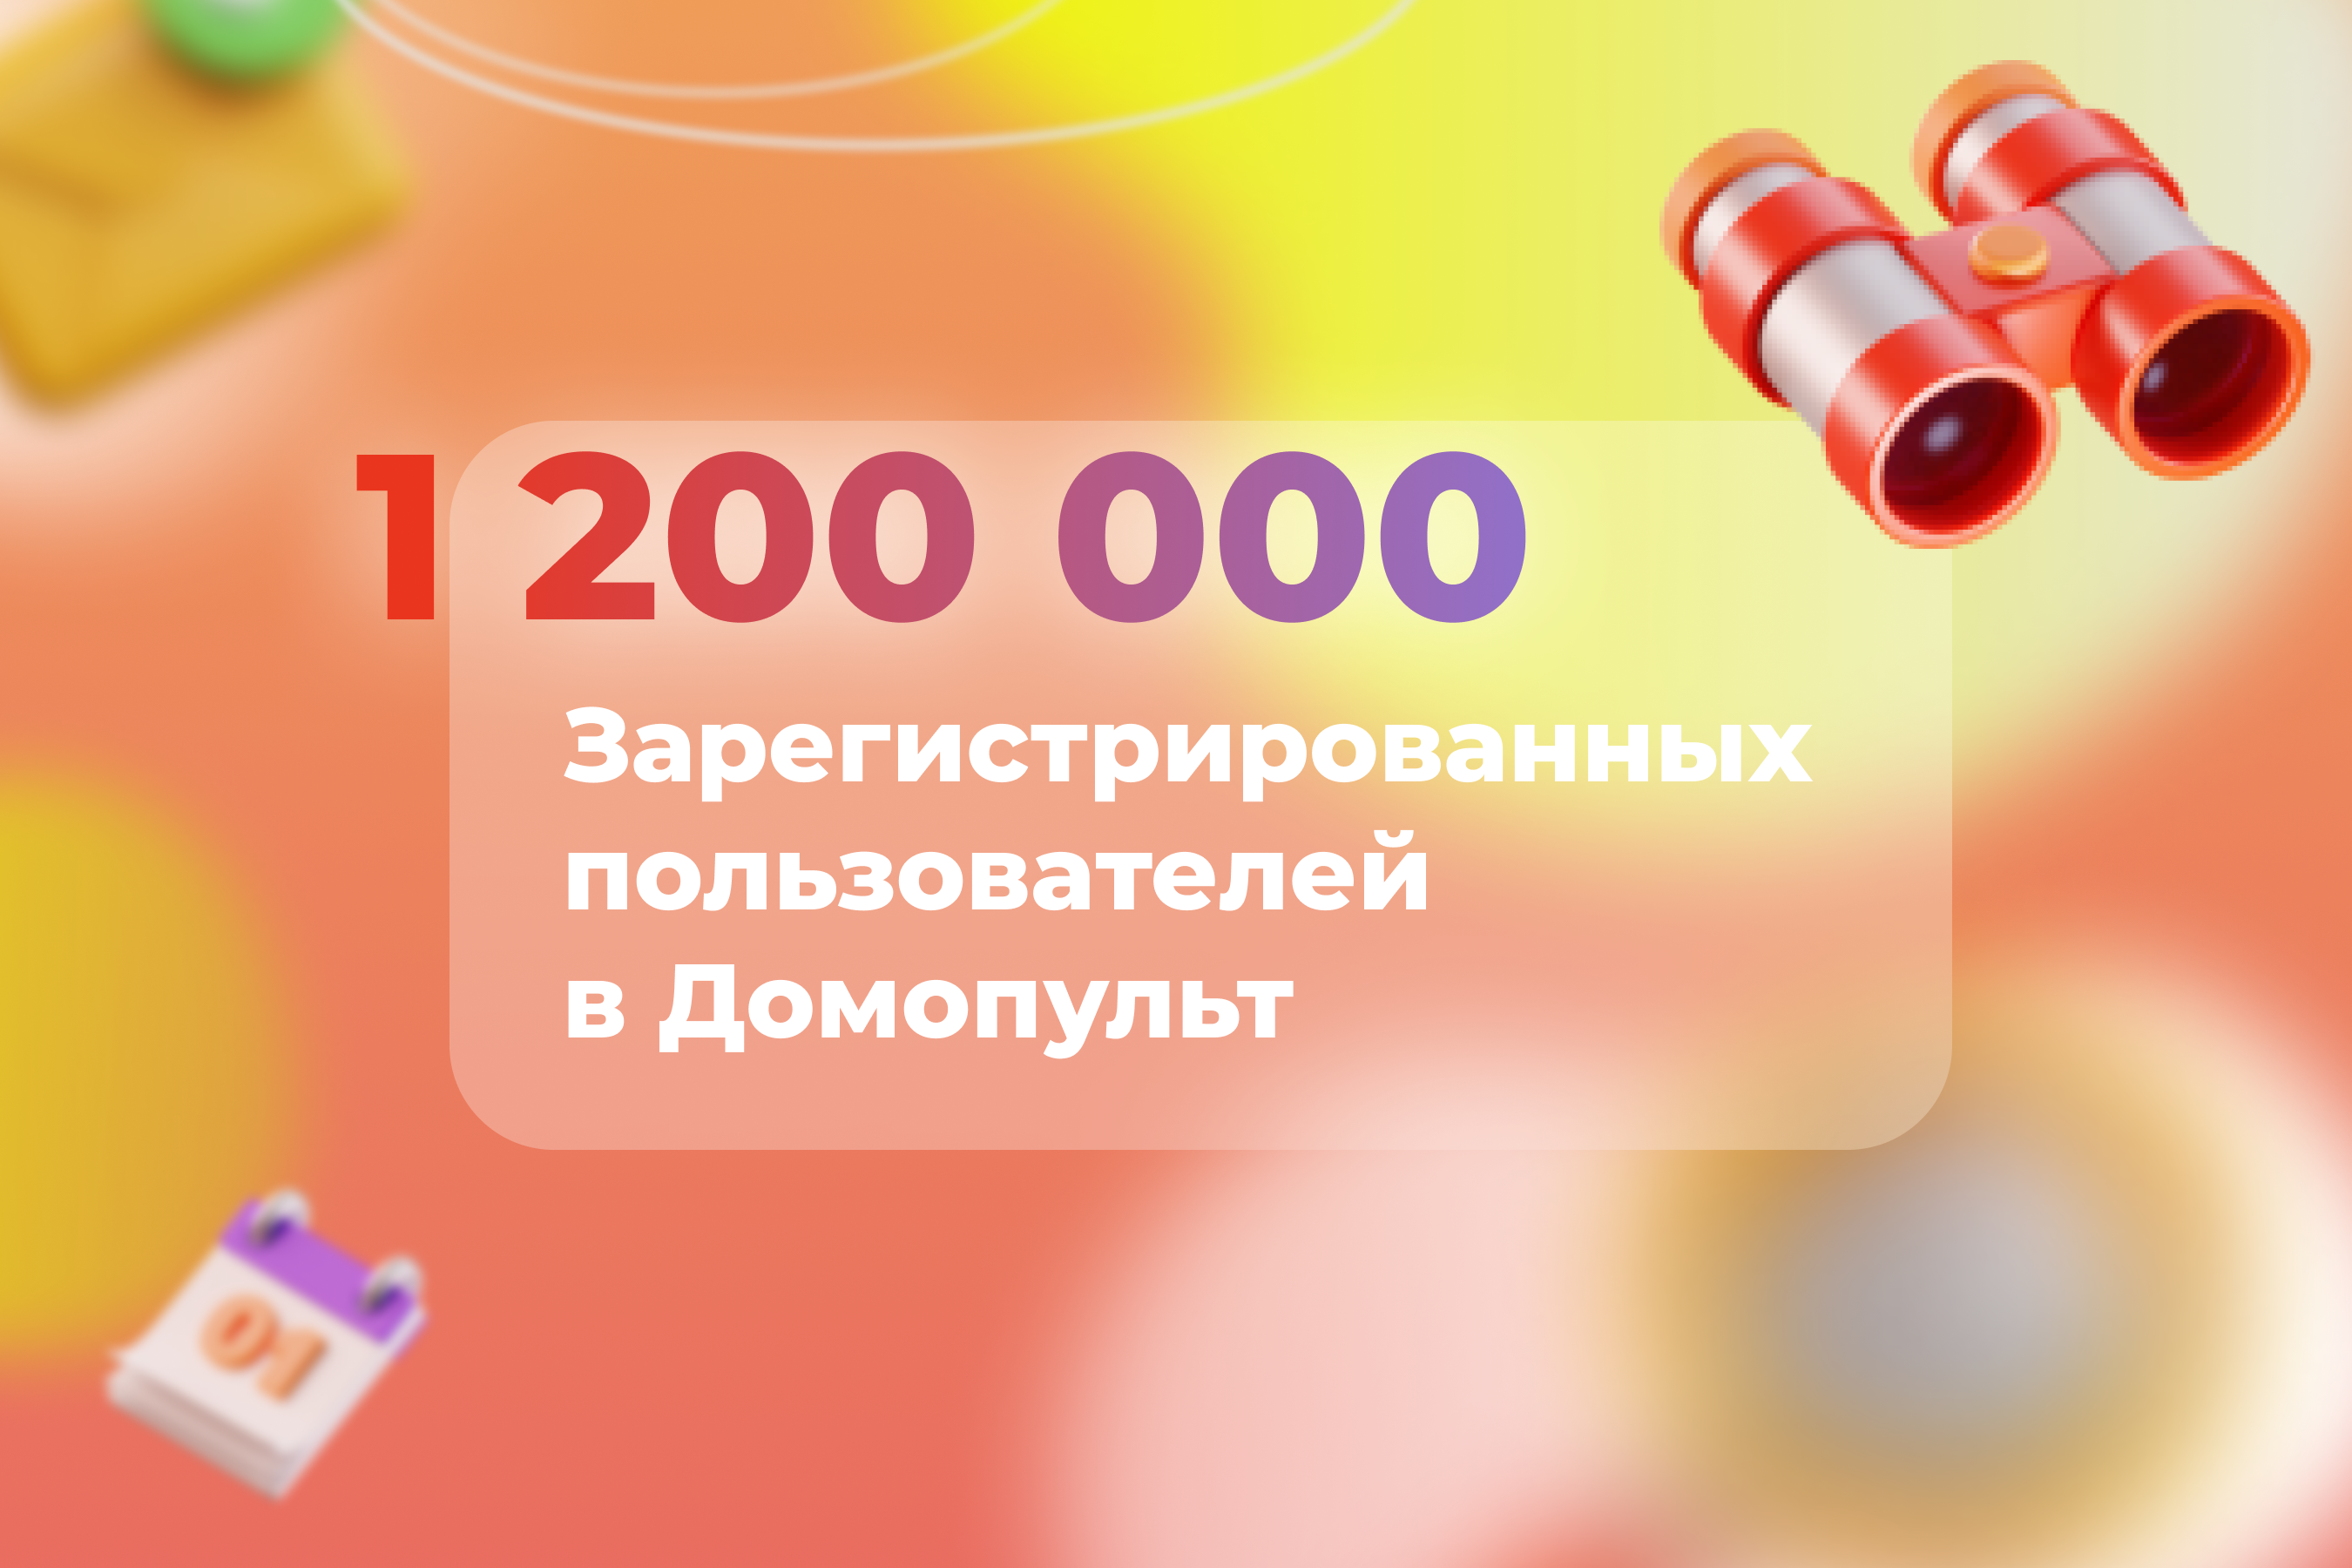 1 200 000 пользователей в Домопульт